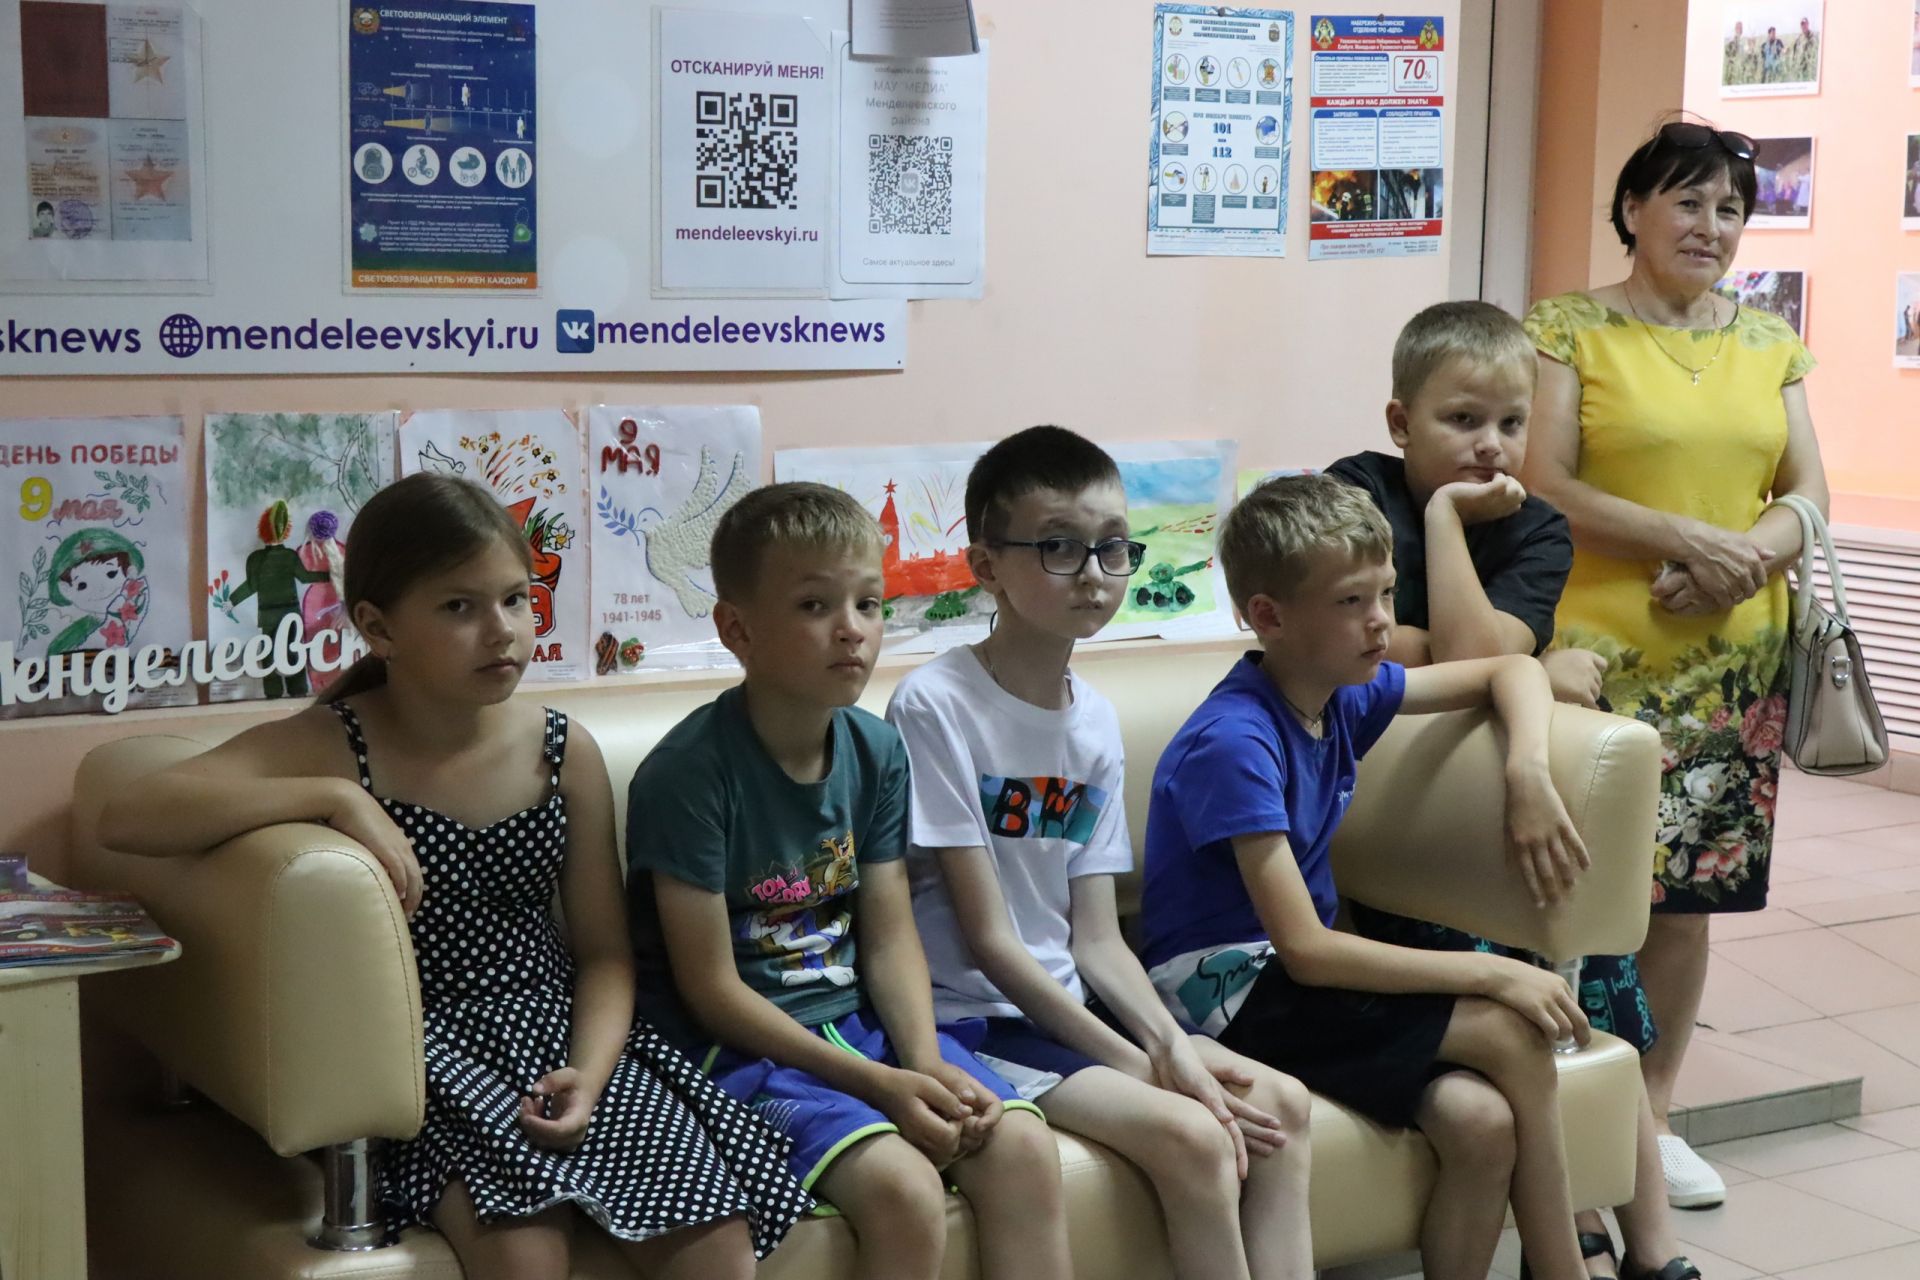 Воспитанники лагерей из Енабердино и Татарских Челнов пришли на экскурсию в «Менделеевские новости»